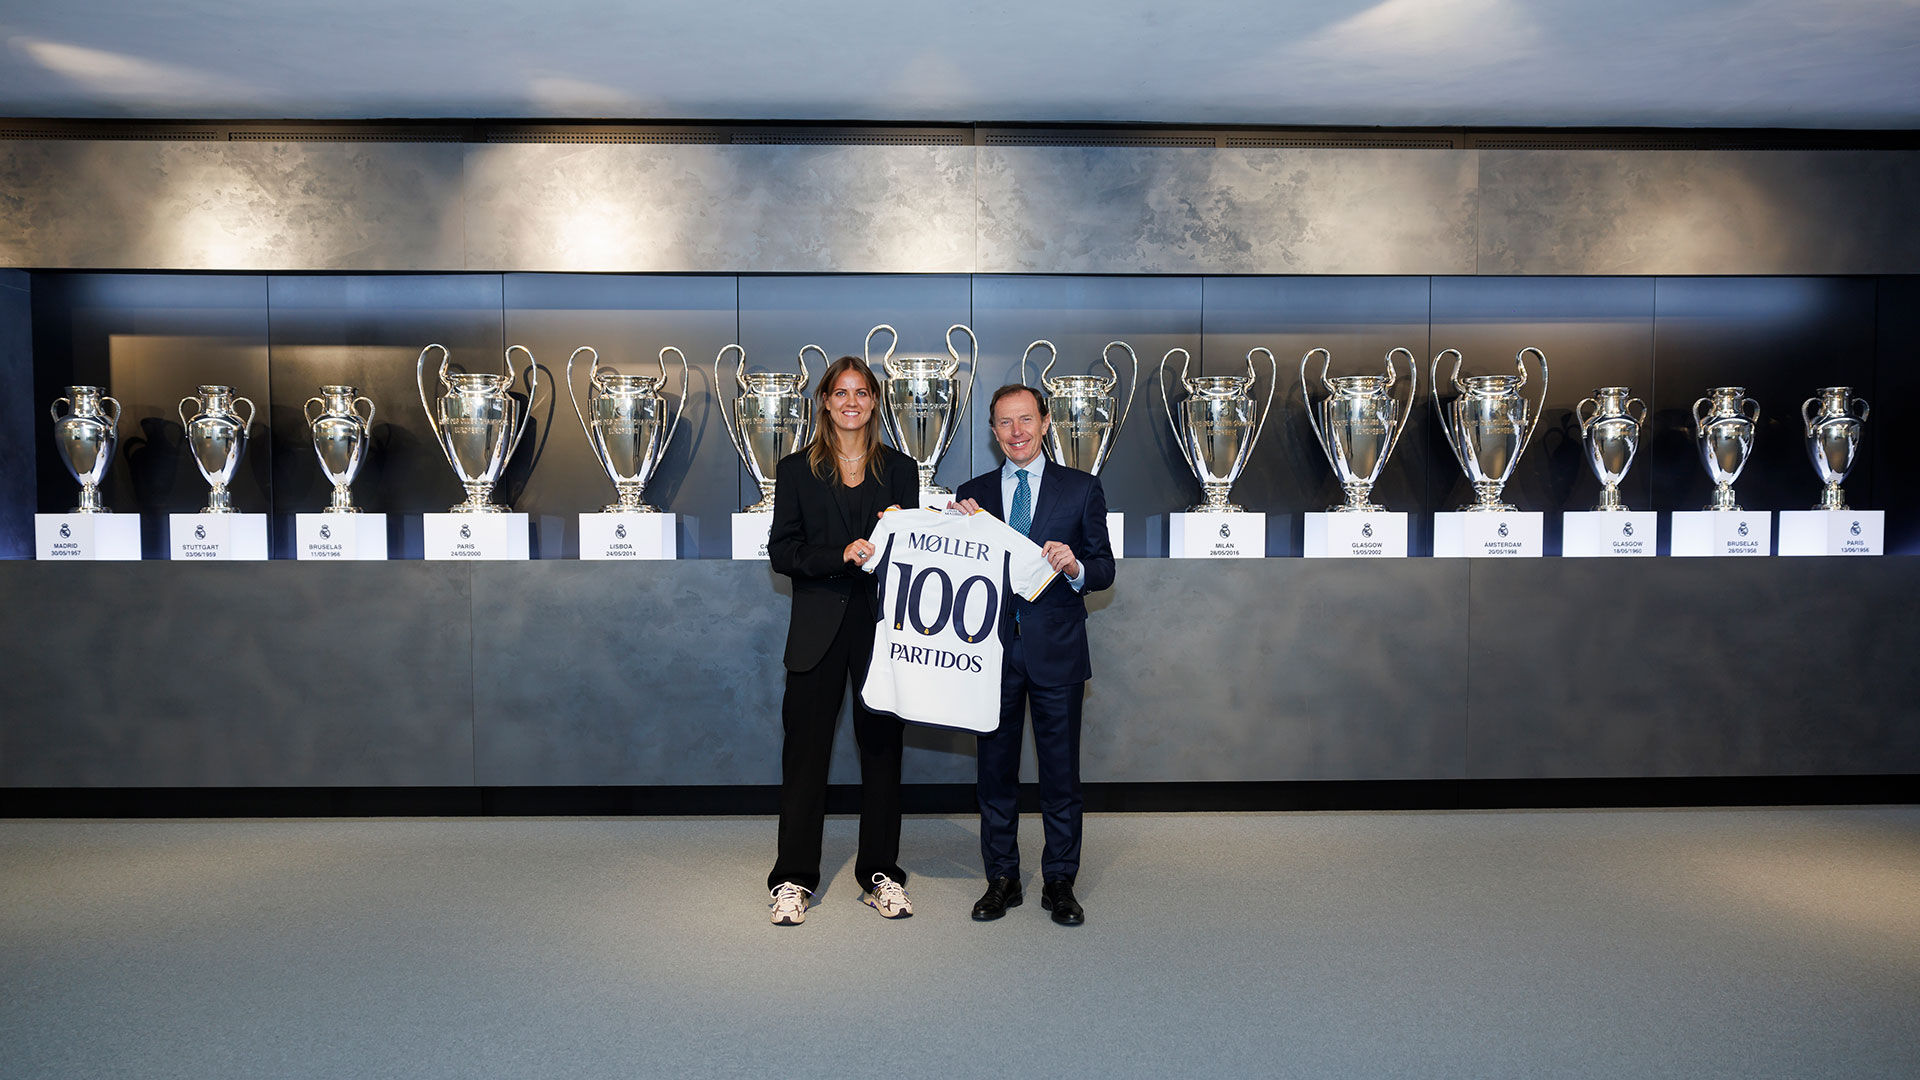 Møller, 100 partidos con el Real Madrid